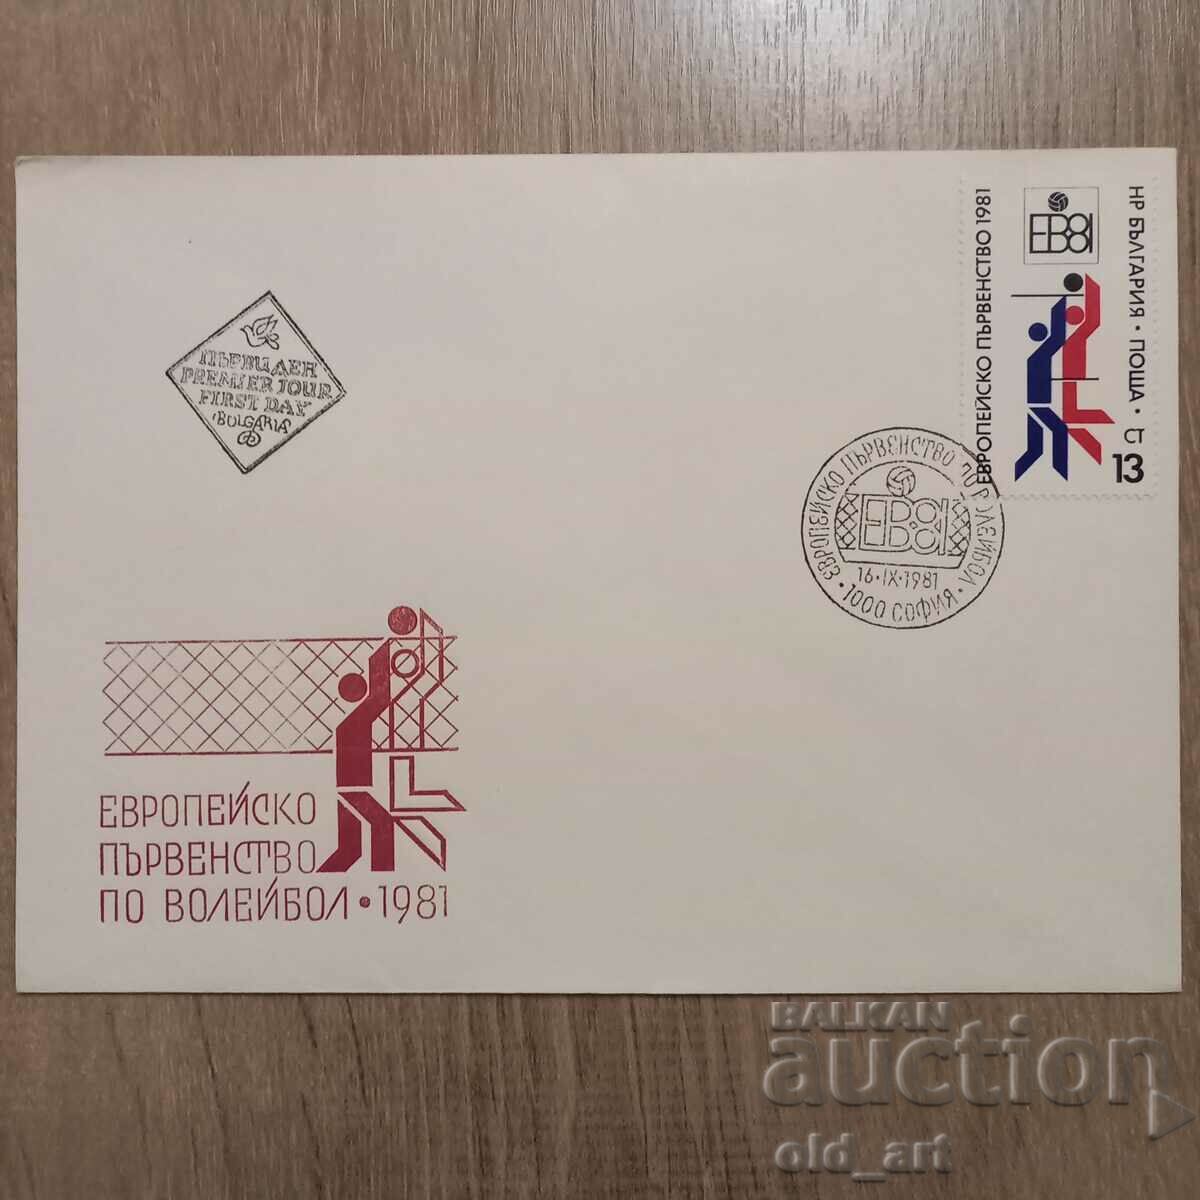 Ταχυδρομικός φάκελος - Ευρωπαϊκό Πρωτάθλημα Βόλεϊ 81